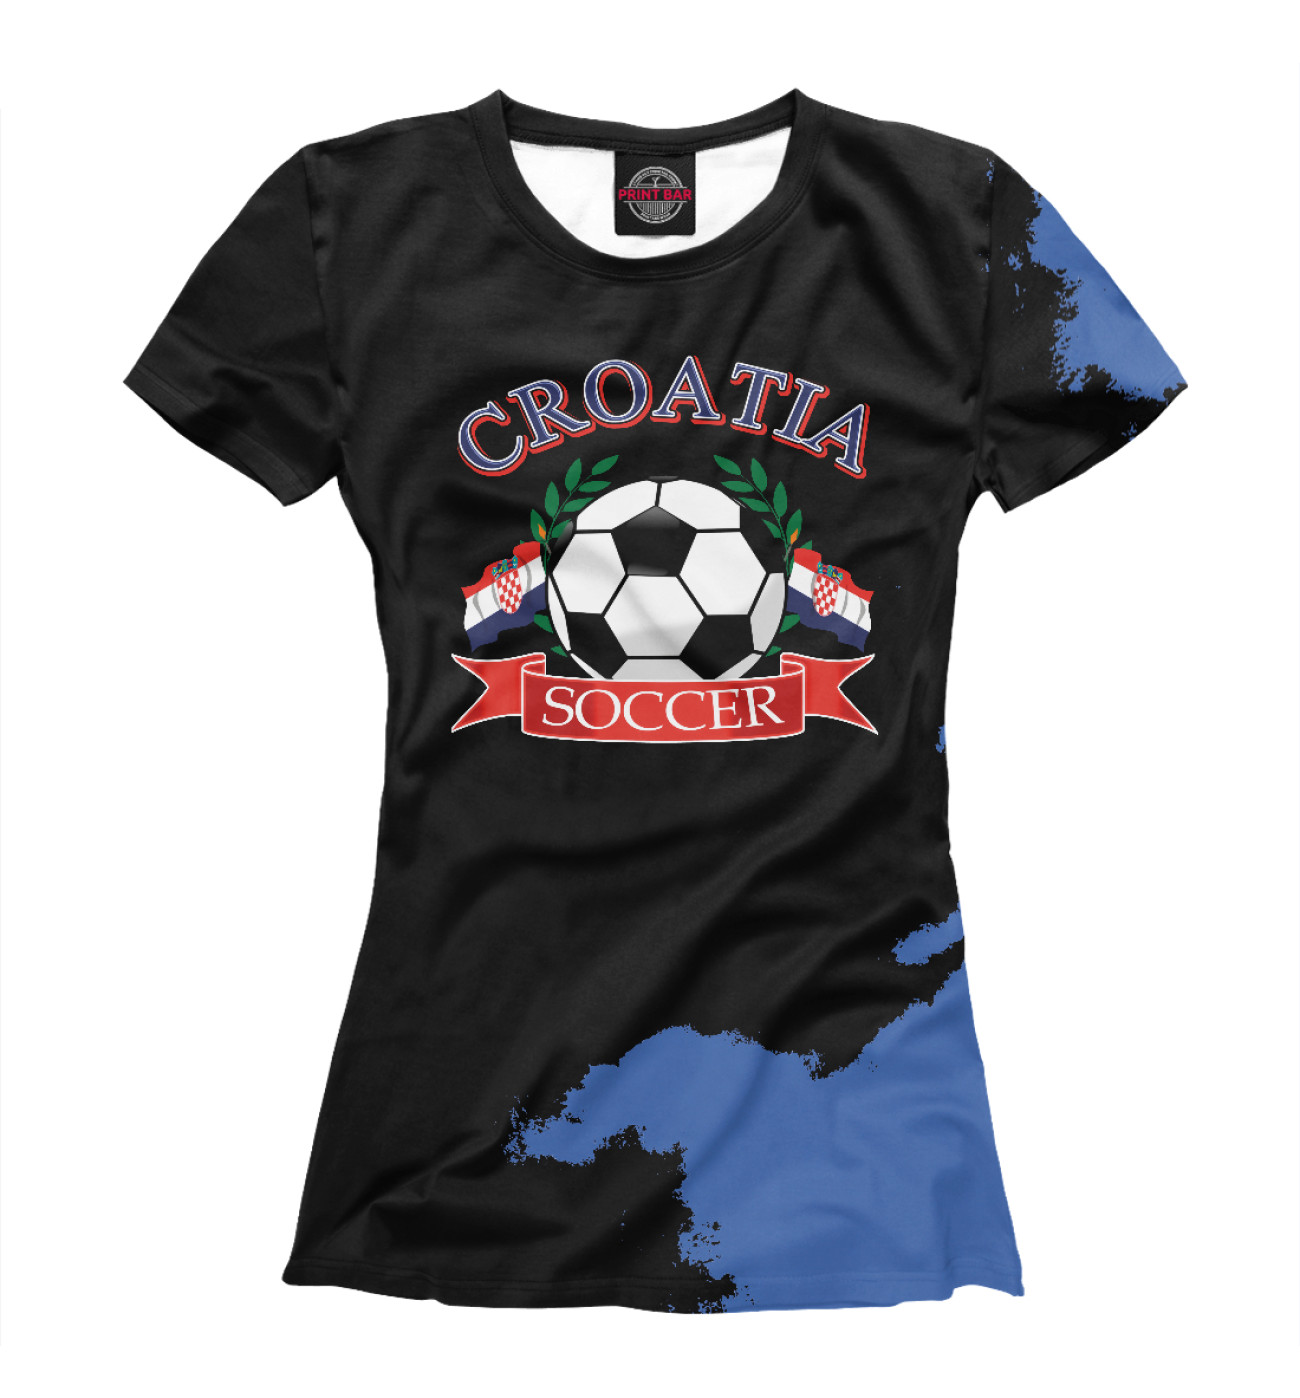 Женская Футболка Croatia soccer ball, артикул: FTO-670002-fut-1